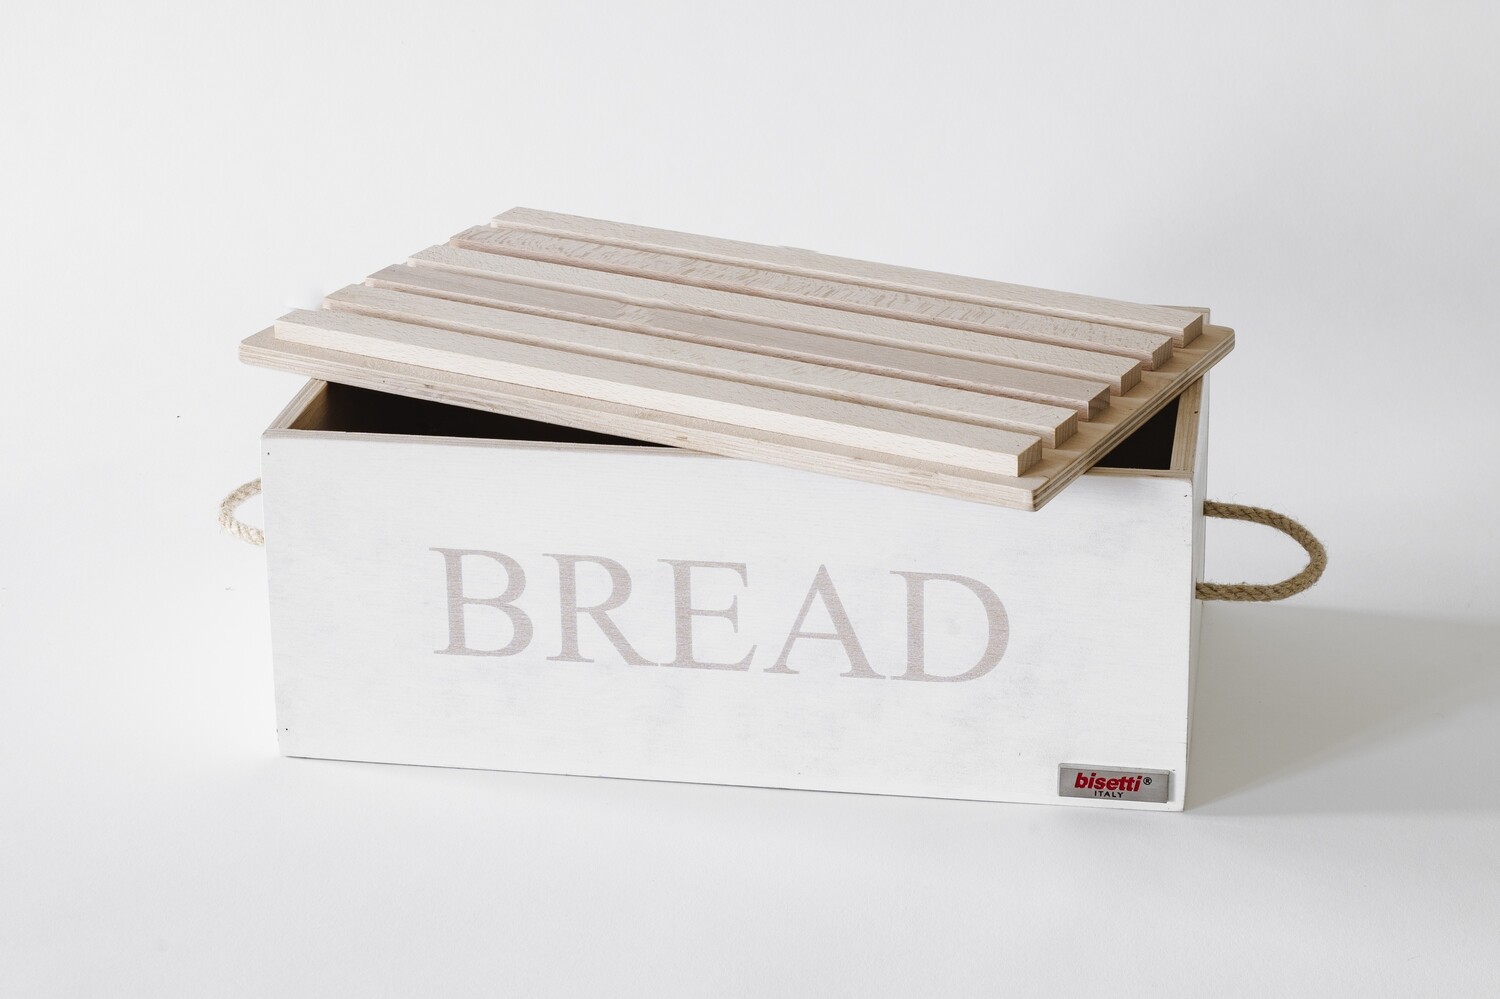 Cassetta pane legno con tagliere coperchio
"STONEWHITE"